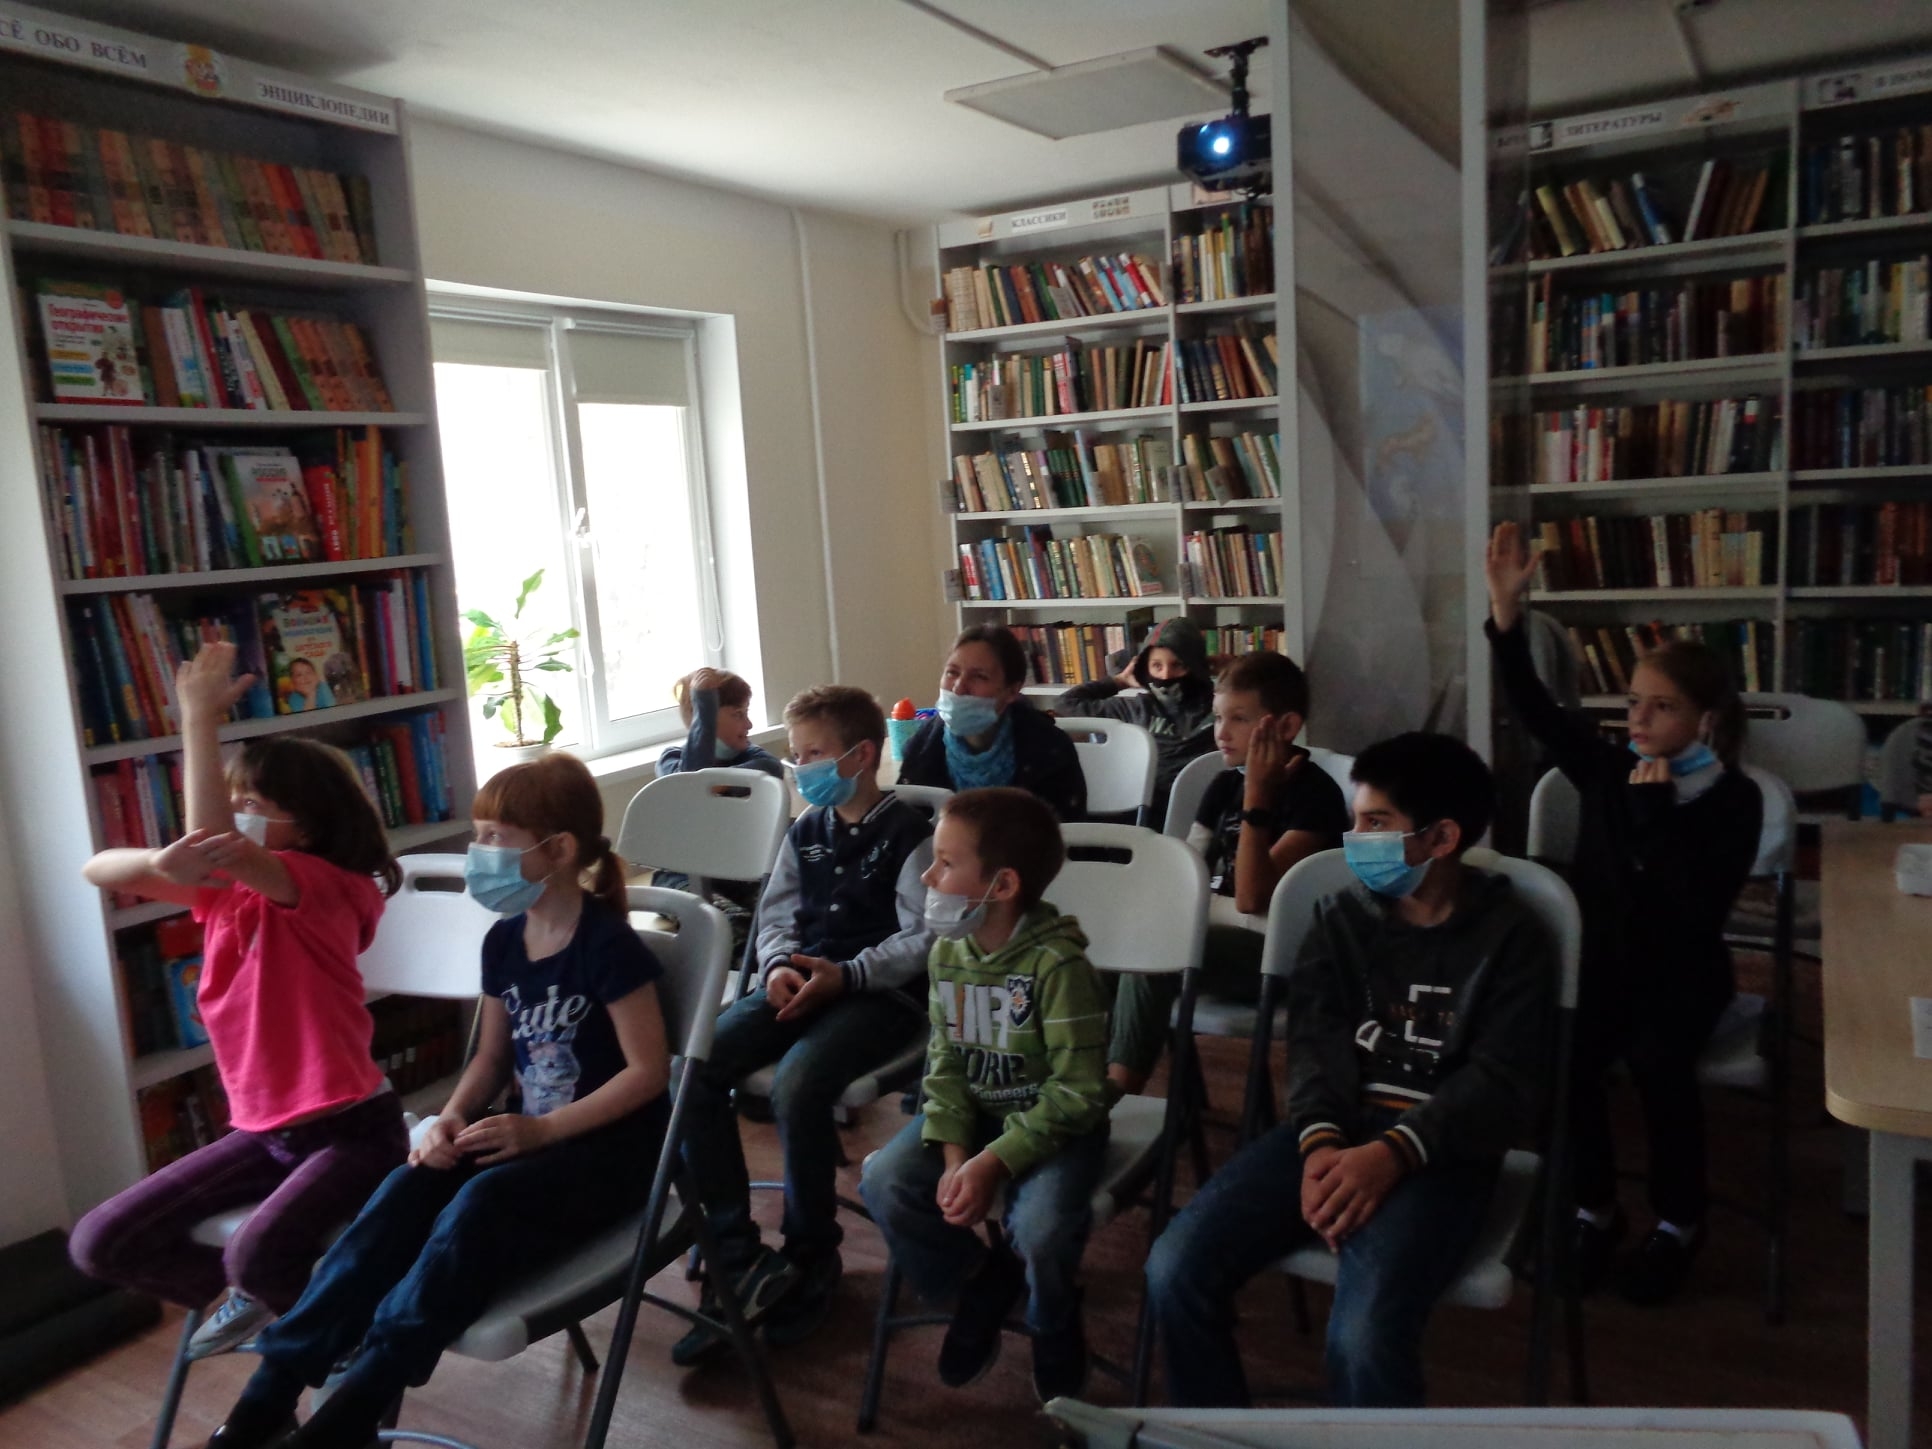 Программу программе «В стране невыученных уроков» проведут для детей из Щербинки. Фото: страница библиотеки Щербинки в социальных сетях